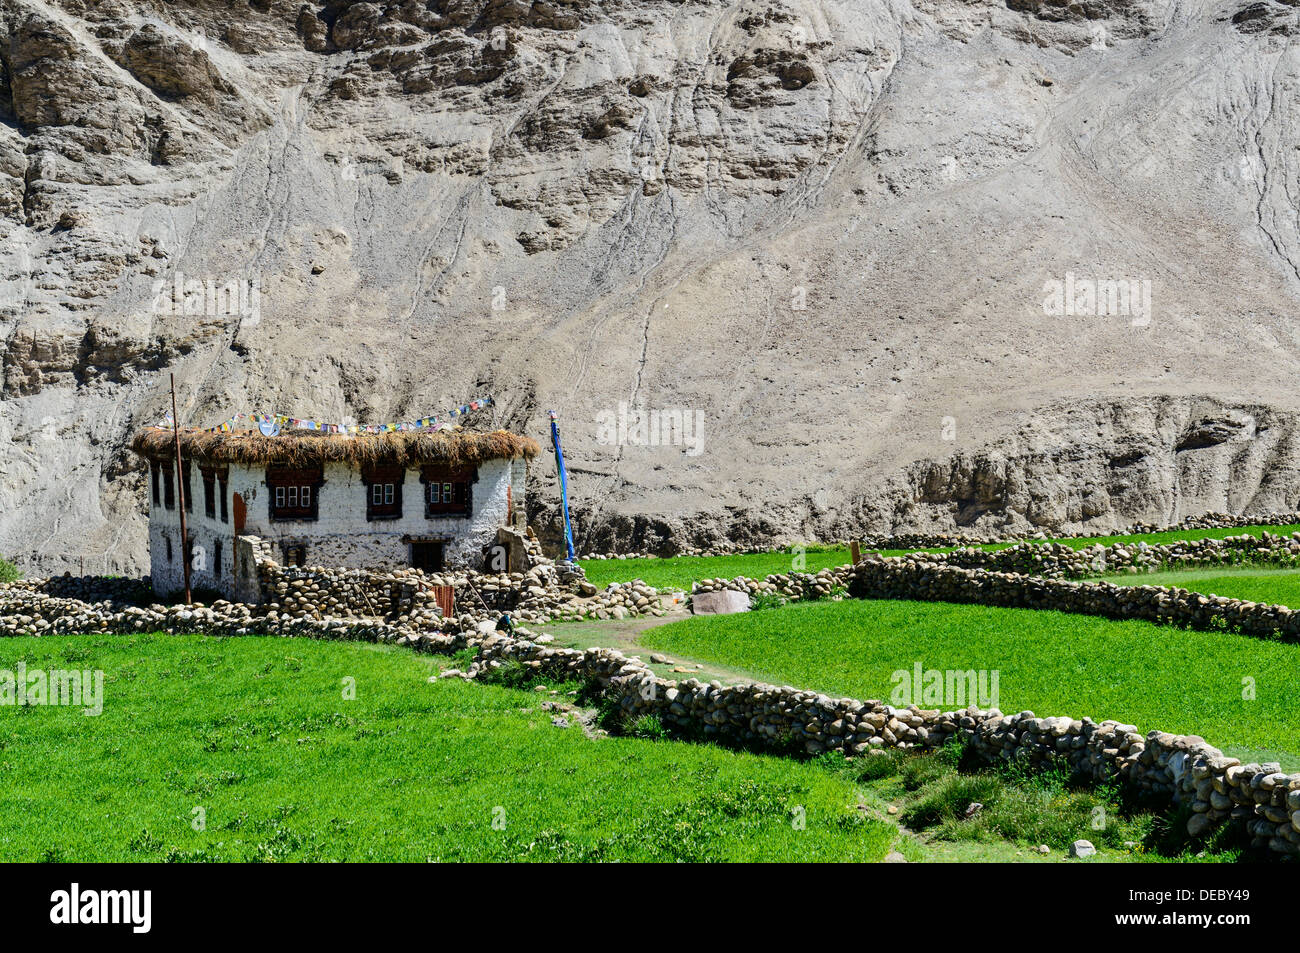 La casa de un campesino rodeado por verdes campos, Rumtse, Ladakh, Jammu y Cachemira, la India Foto de stock